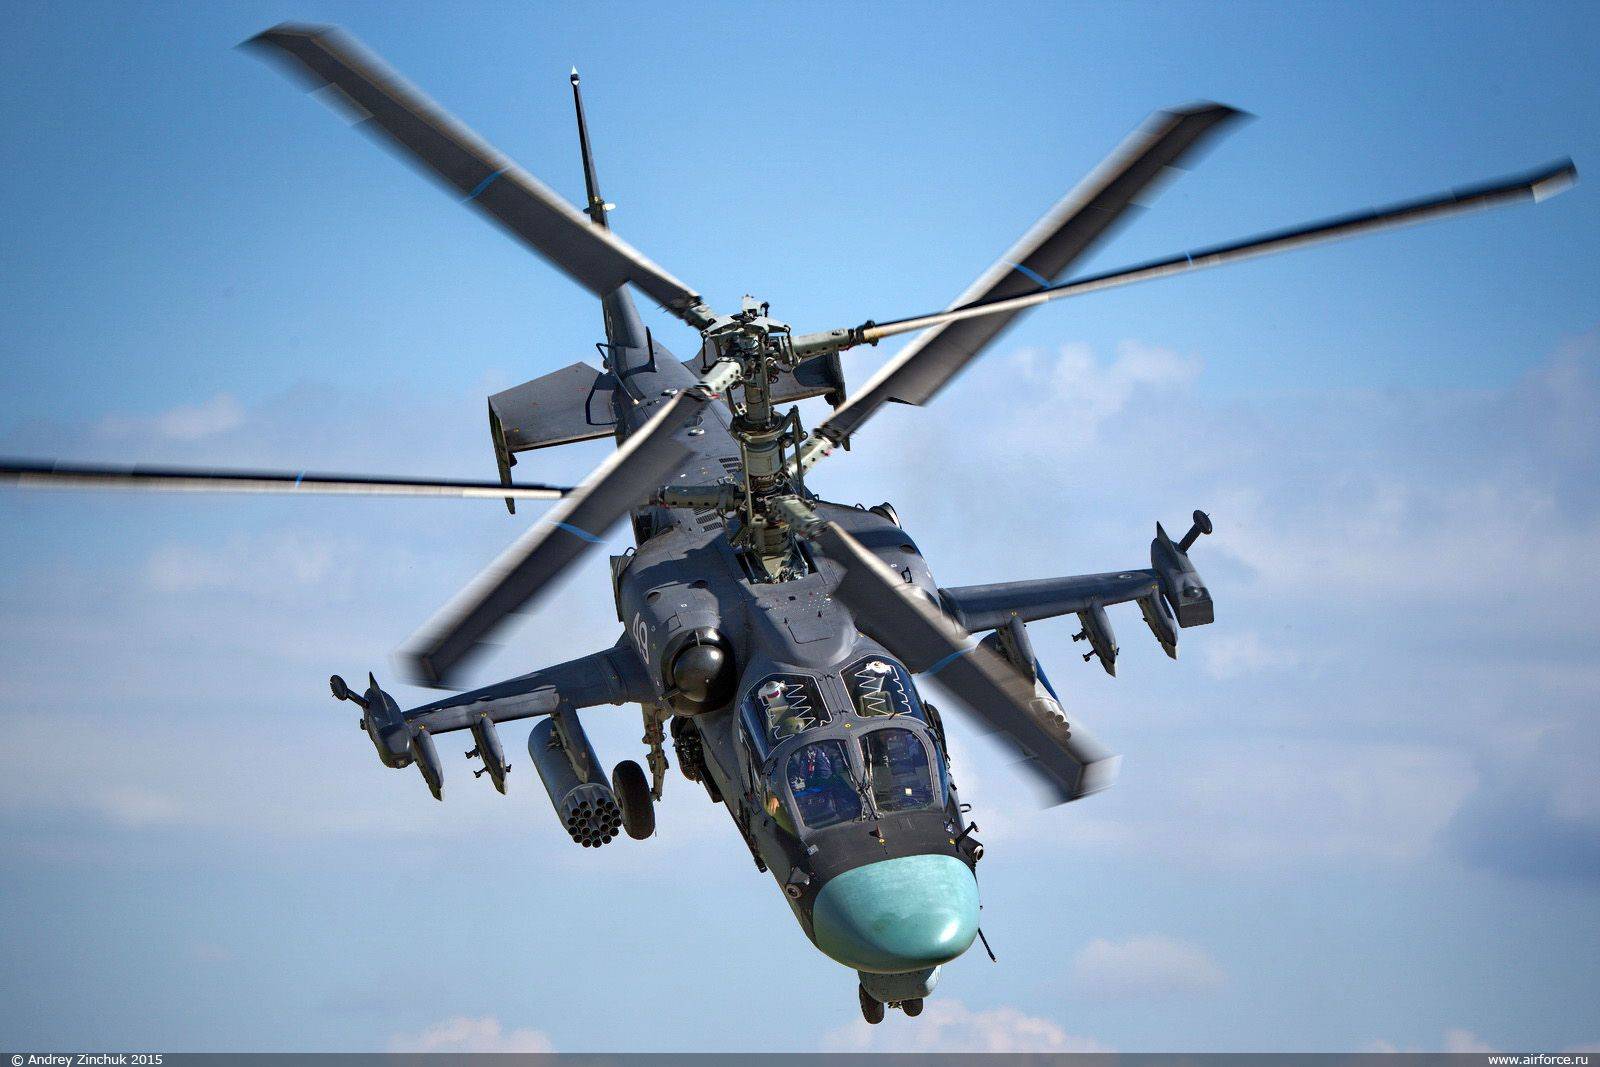 Вертолет ка-52 ???? конструкция, технические характеристики, эксплуатация